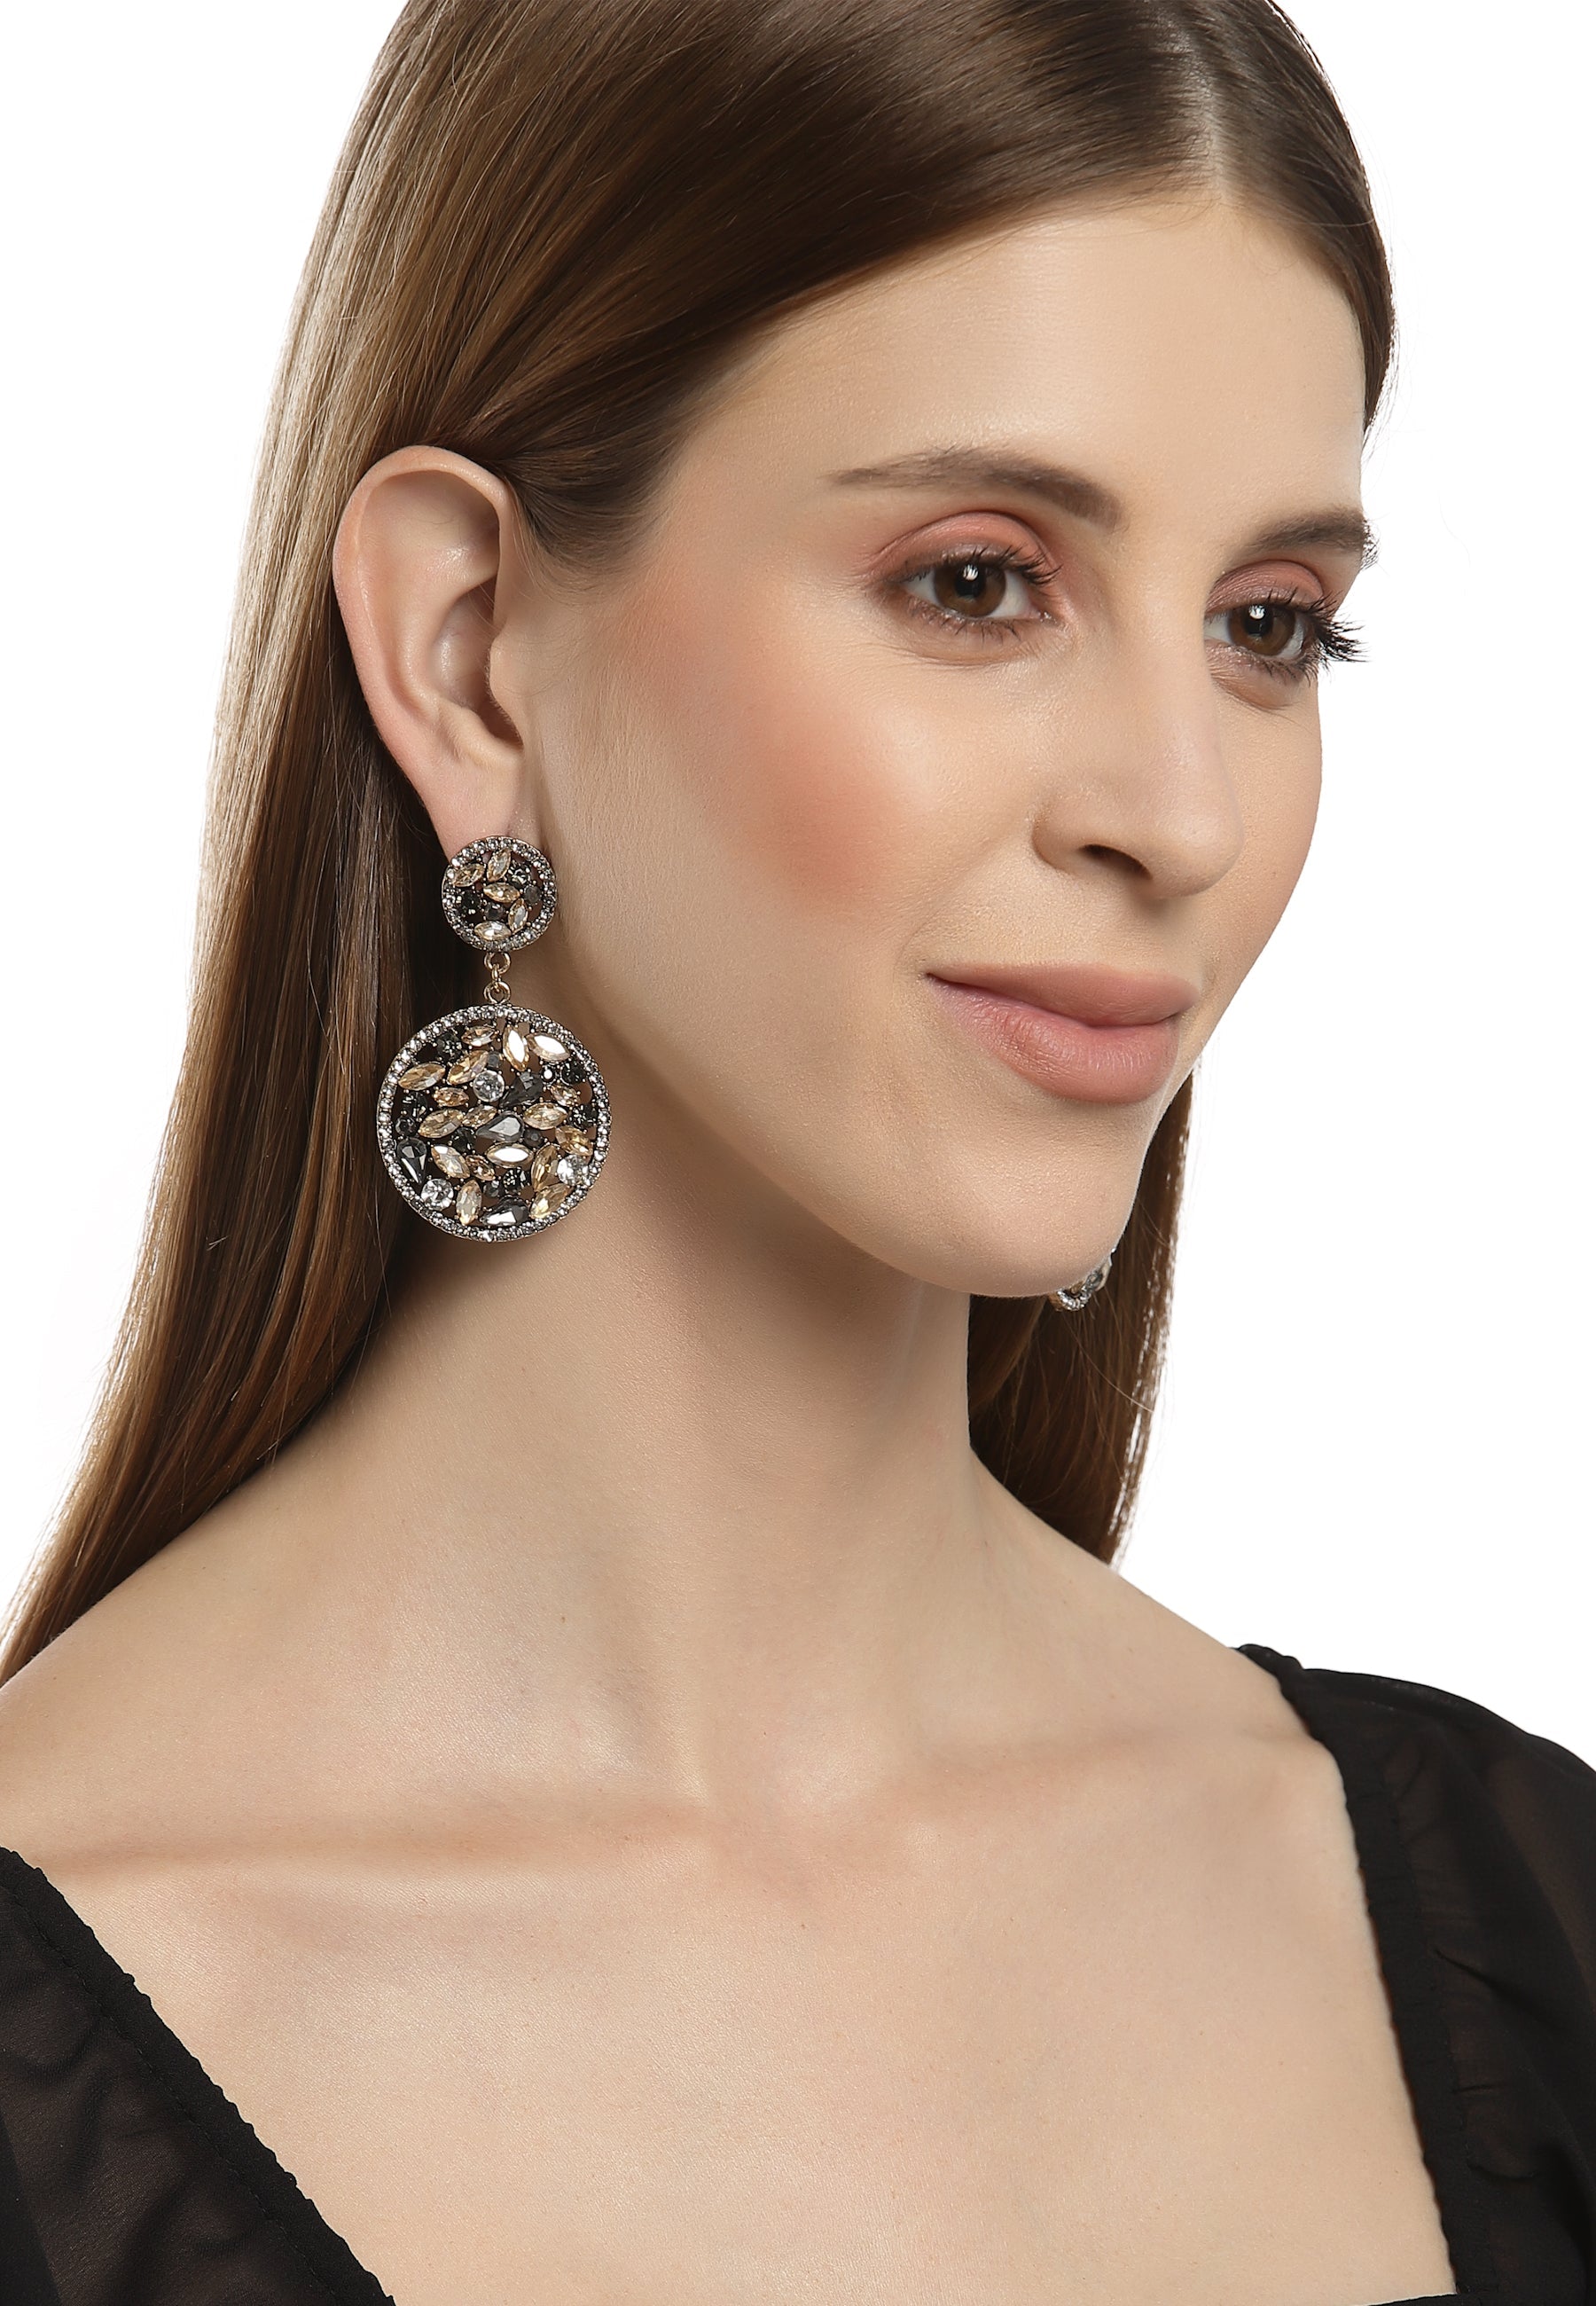 Ráiteas Bling Crystal Rhinestone Earrings